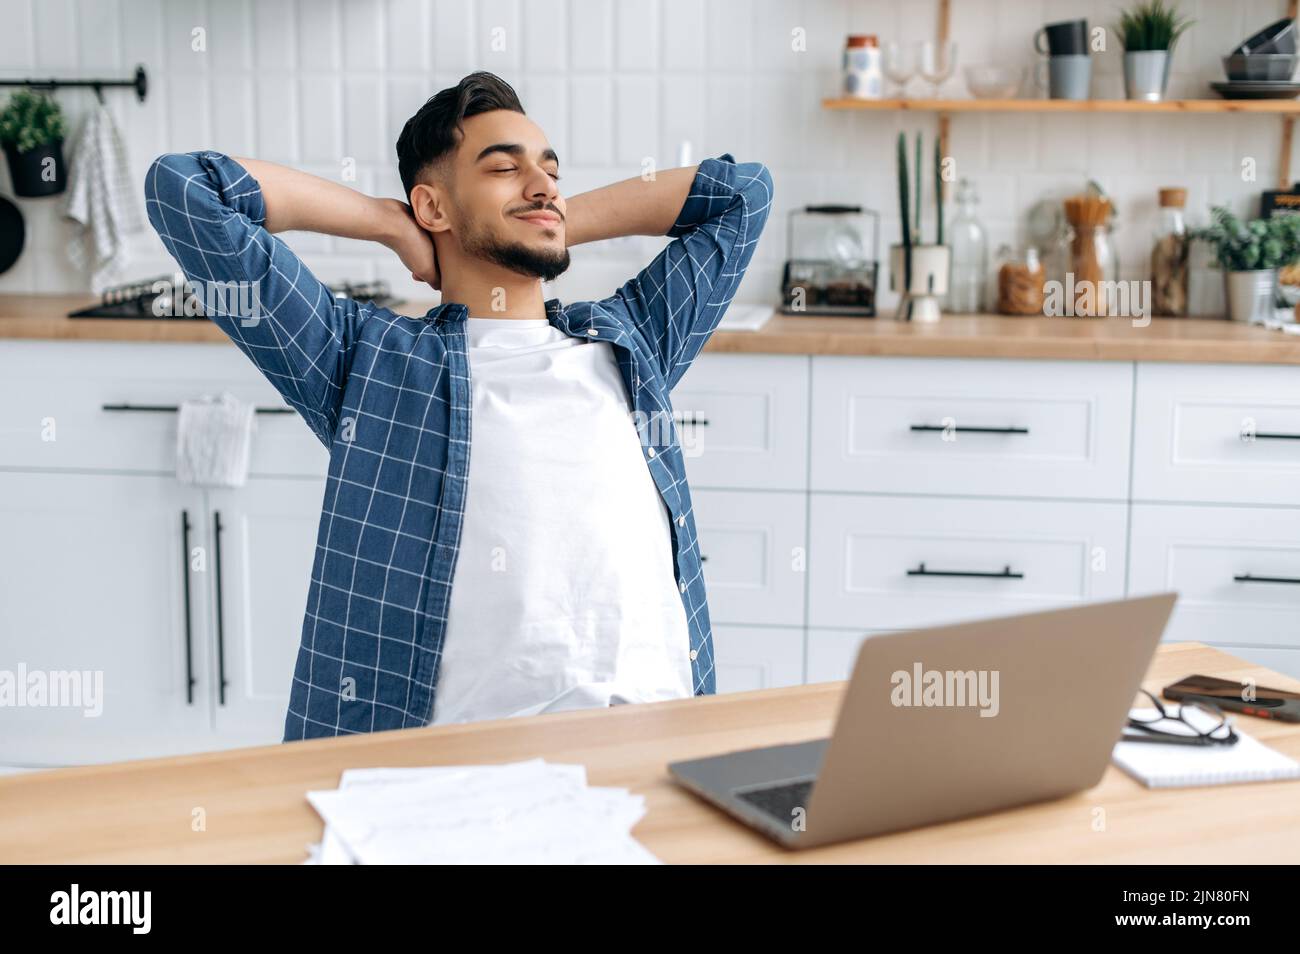 Entspannter, ruhiger araber oder inder, Freiberufler, arbeitet von zu Hause aus, sitzt in der Küche am Arbeitsplatz, macht eine Pause von der Arbeit, legt seine Hände hinter den Kopf, schließt seine Augen, träumt von Ruhe, lächelt Stockfoto